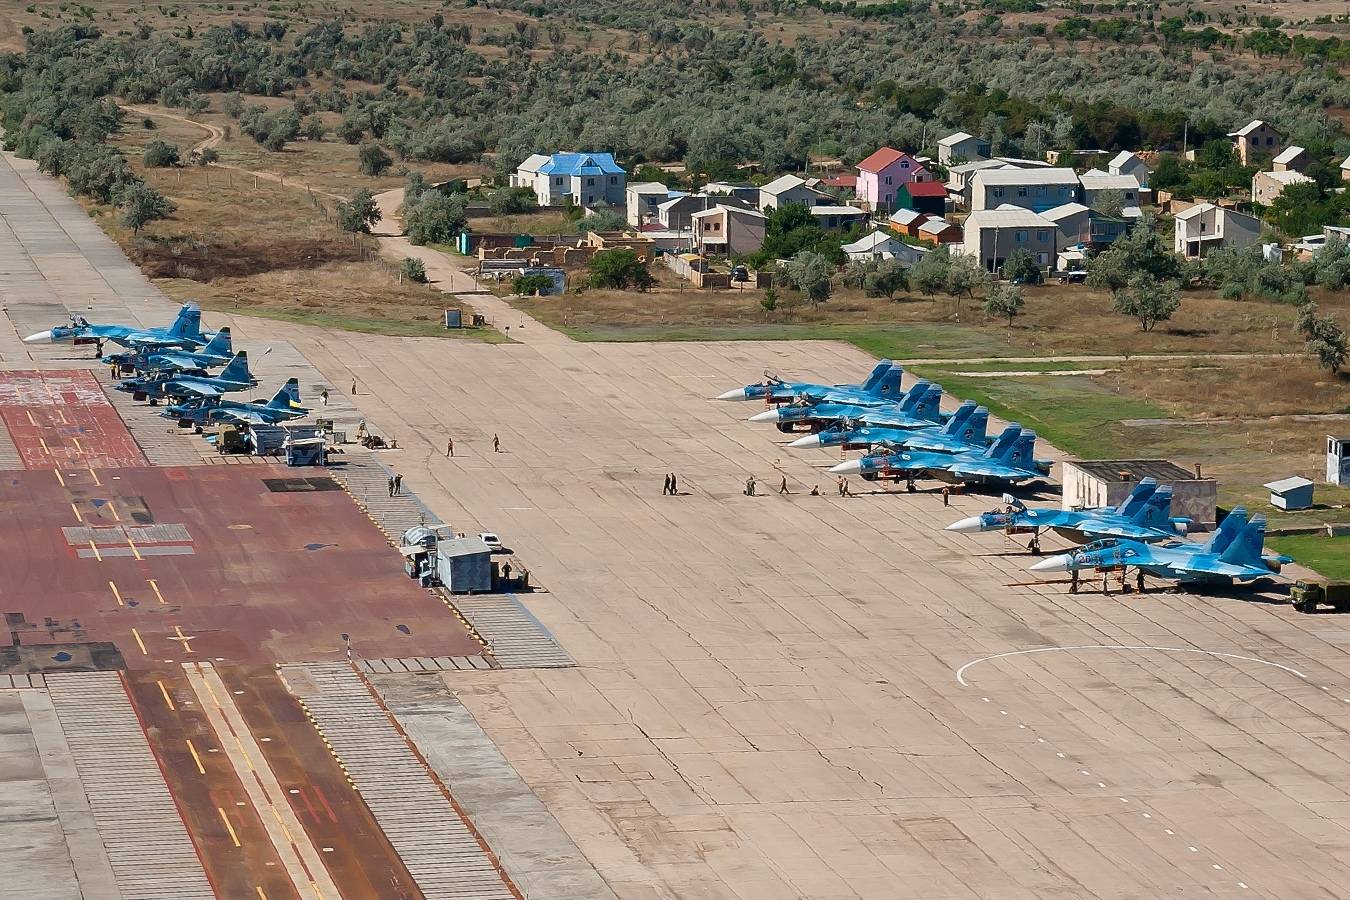 装备尼特卡系统的萨奇机场资料图此次发生事故的萨奇机场目前被俄军